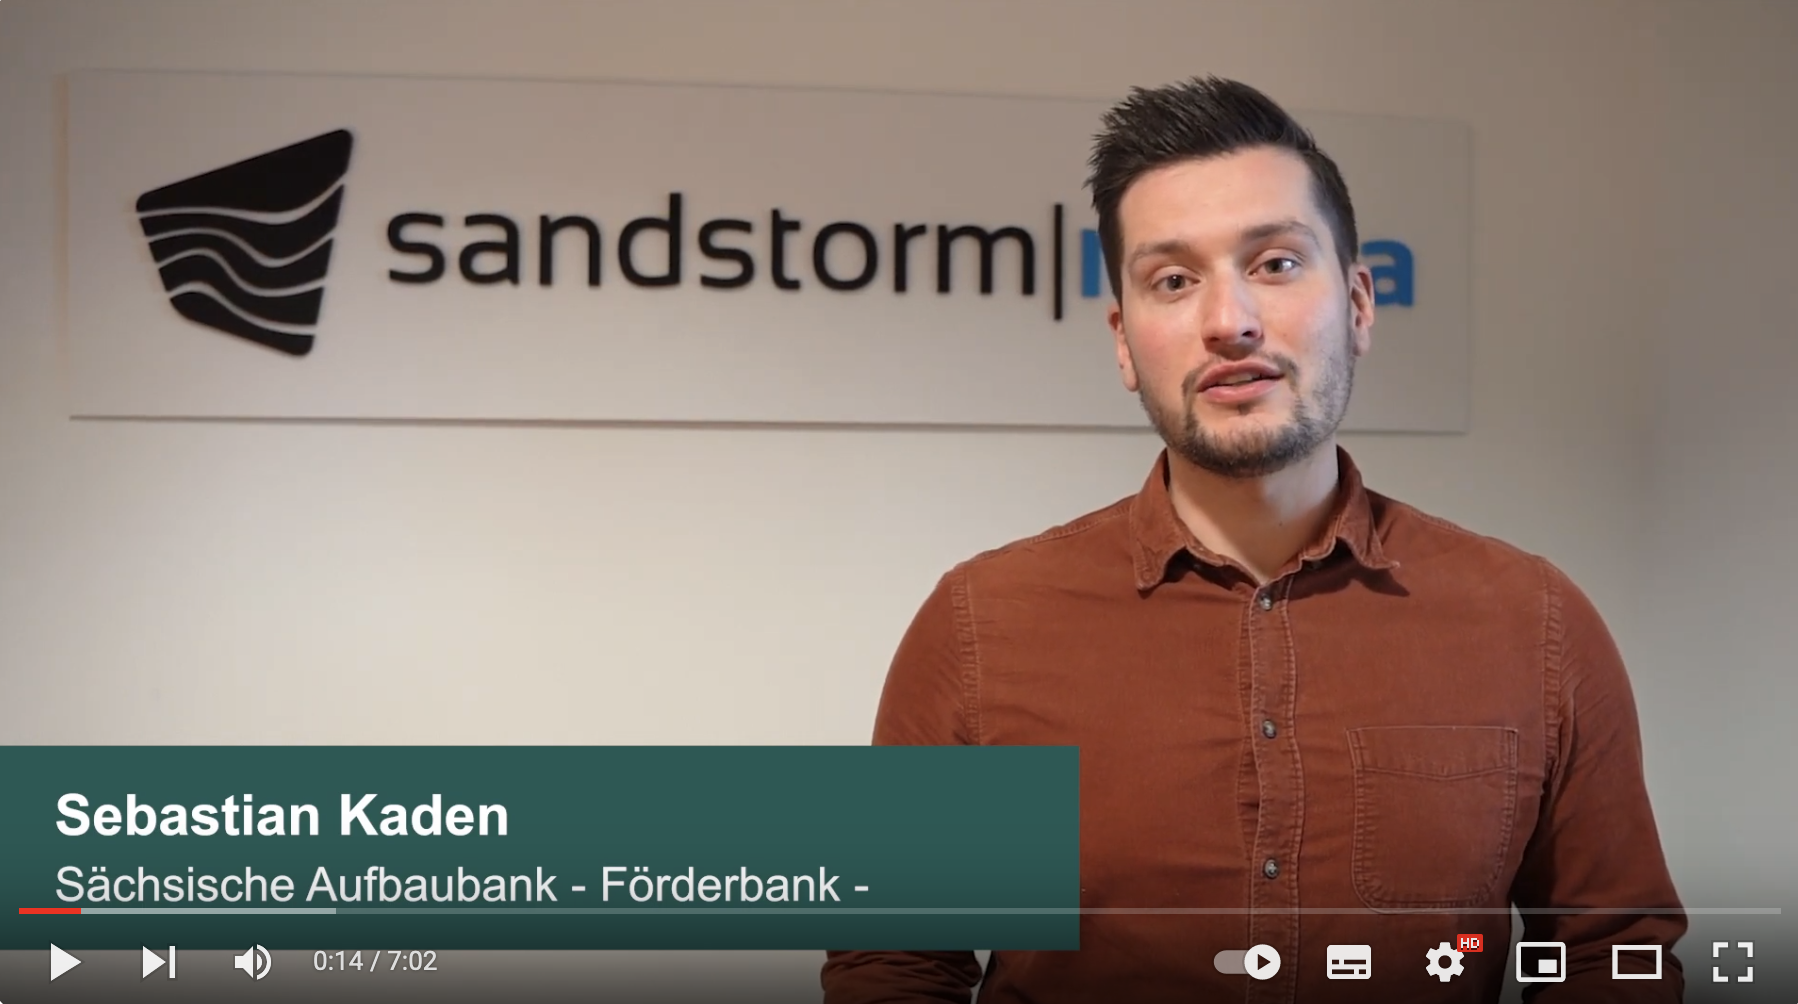 Sebastian Kaden (SAB) zu Besuch bei Sandstorm